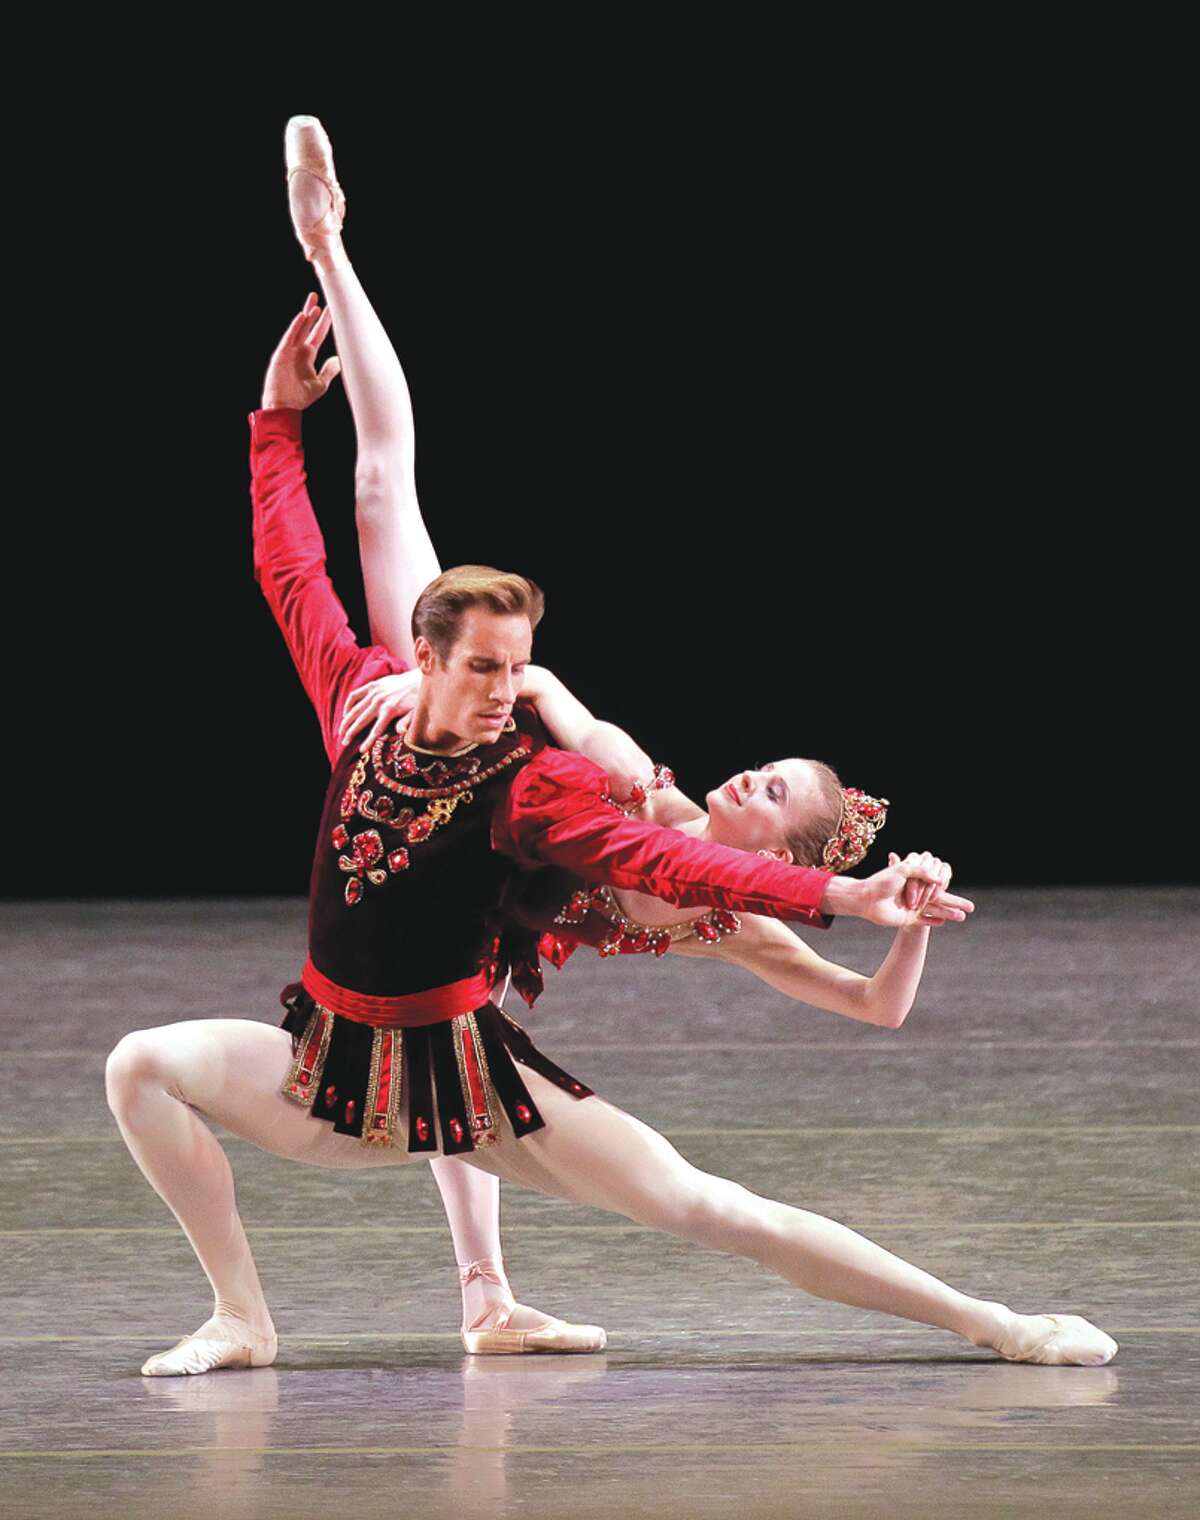 SPAC announces New York City Ballet's summer season